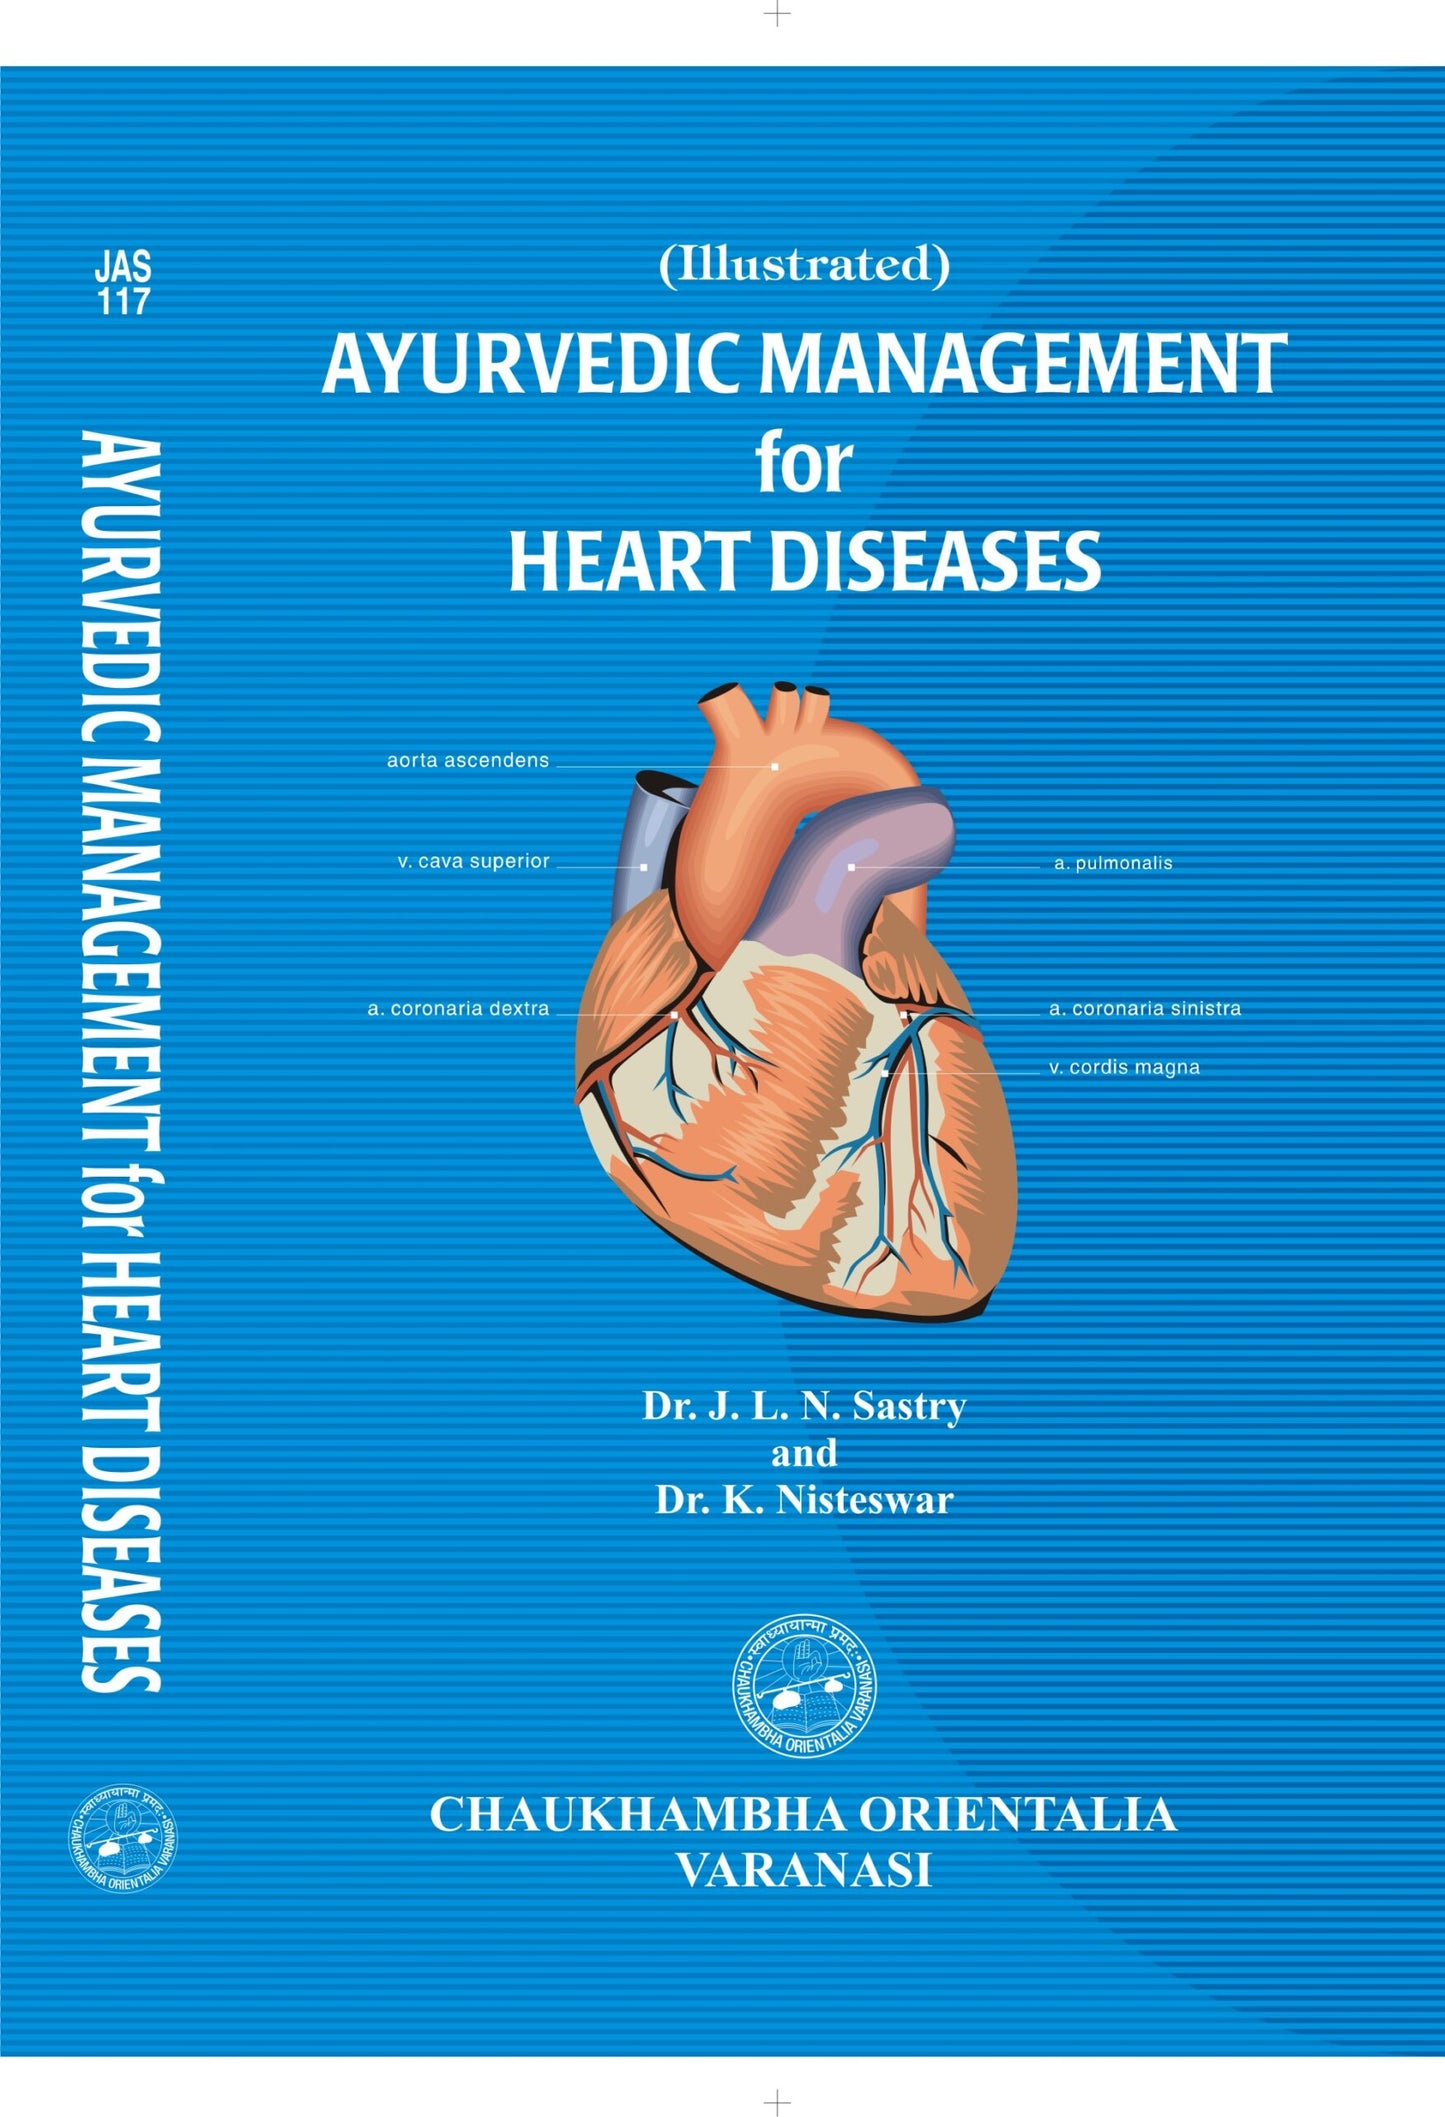 Chaukhambha Orientalia Ayurvedic Management for Heart Diseases